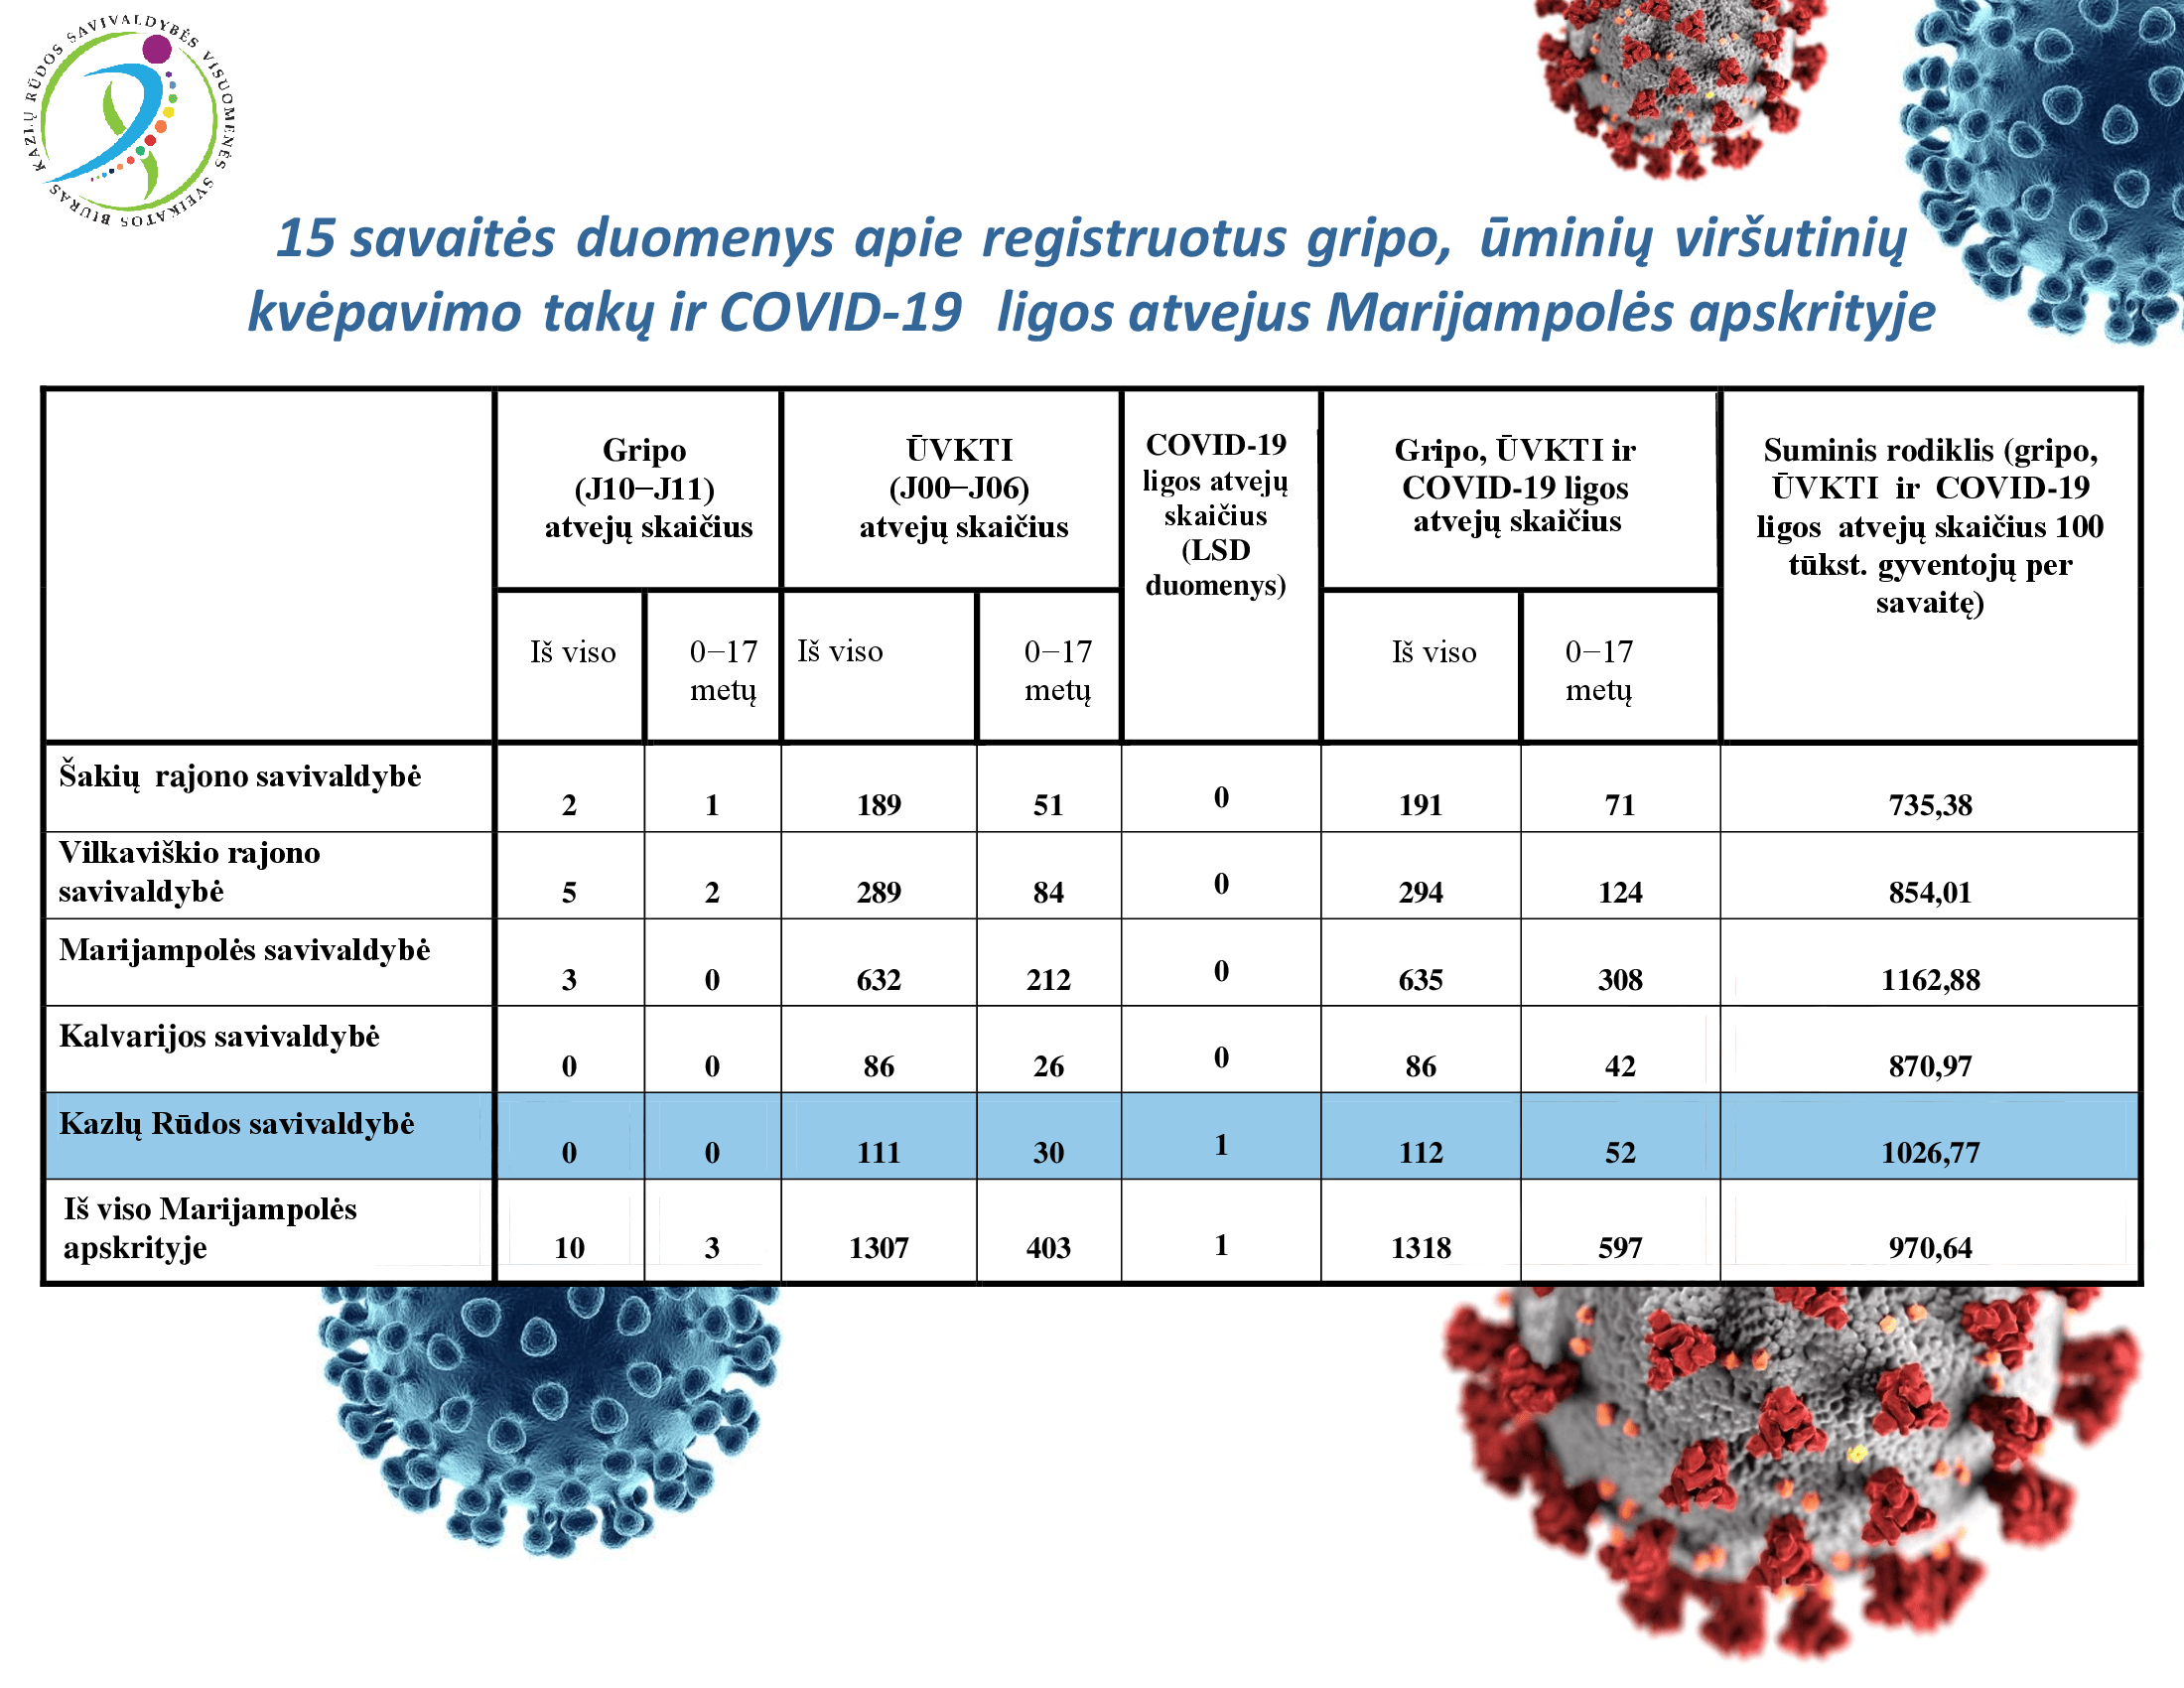 15-savaites-duomenys-apie-registruotus-gripo,-uminiu-virsutiniu-kvepavimo-taku-ir-covid-19-ligos-atvejus-marijampoles-apskrityje-